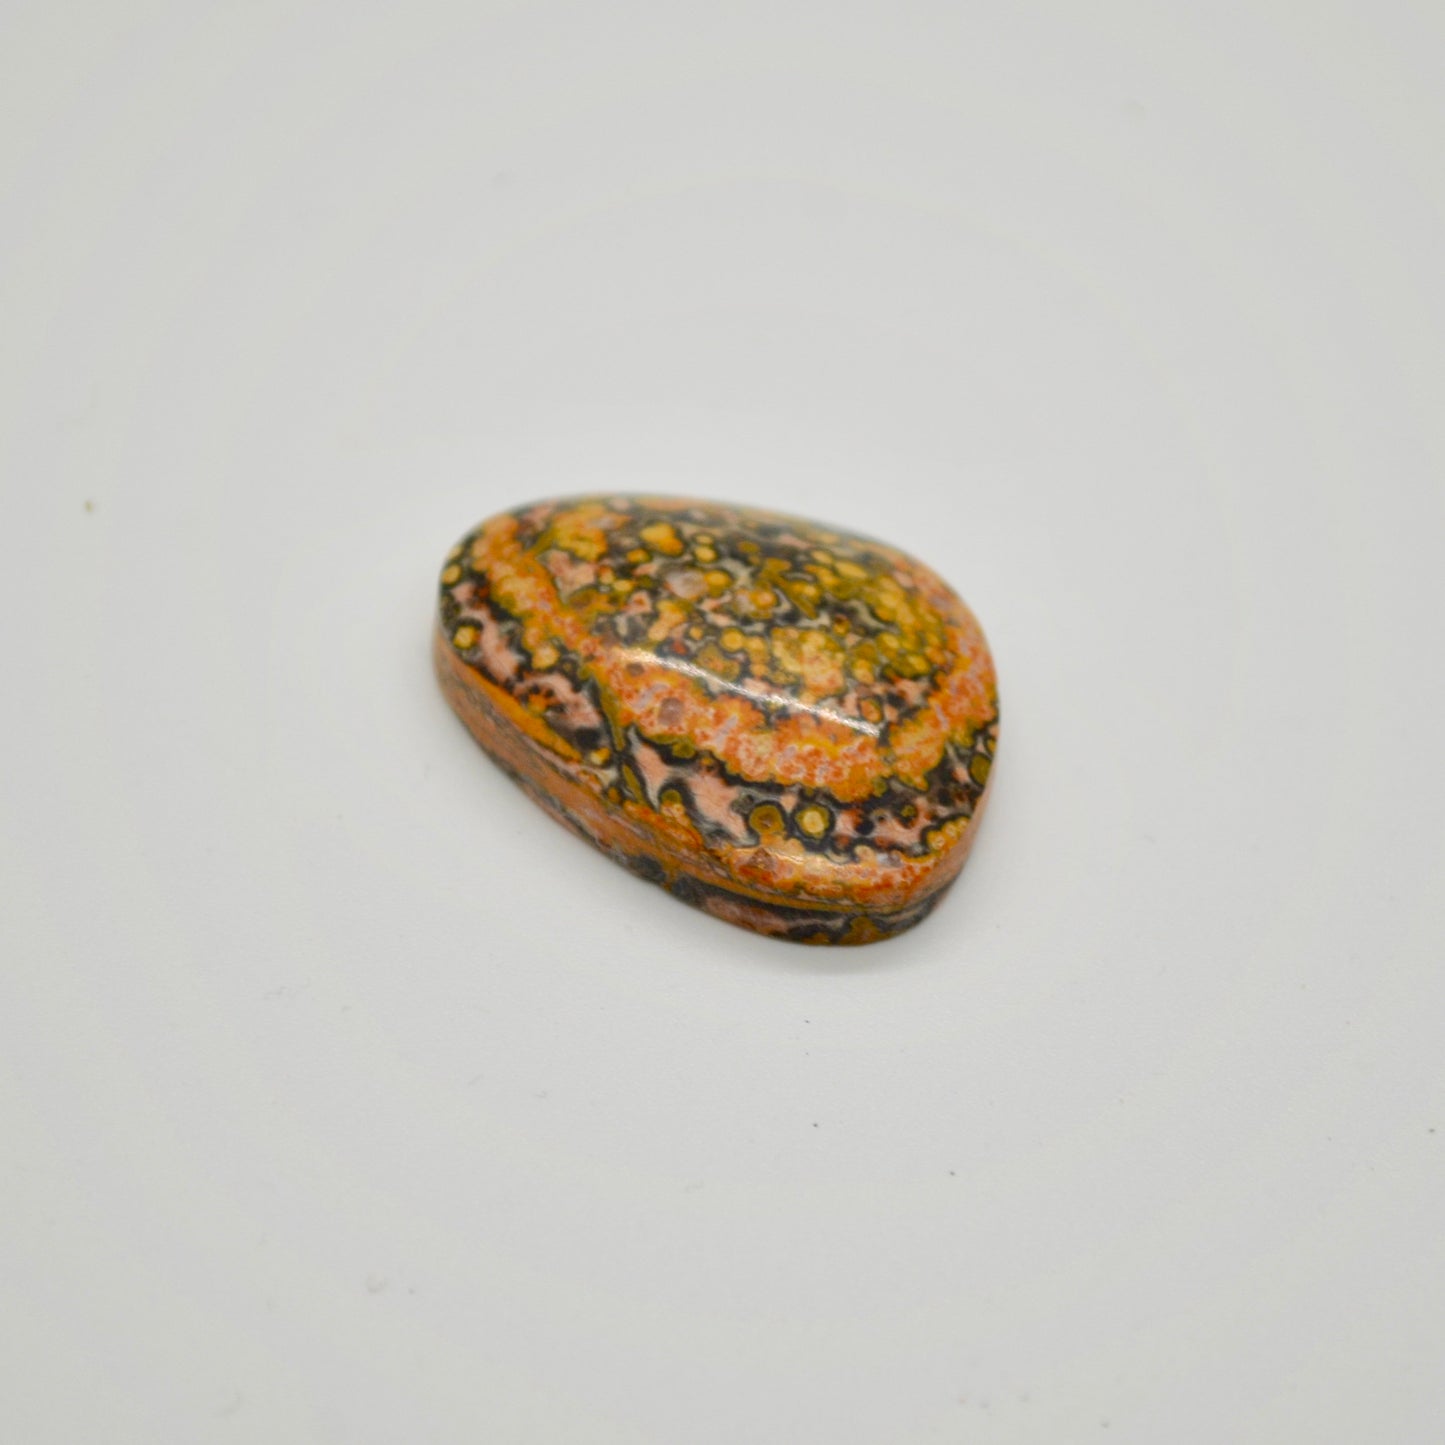 Leopard Skin Jasper Cabochon - 36.7 carats (22.6 mm x 30.5 mm)